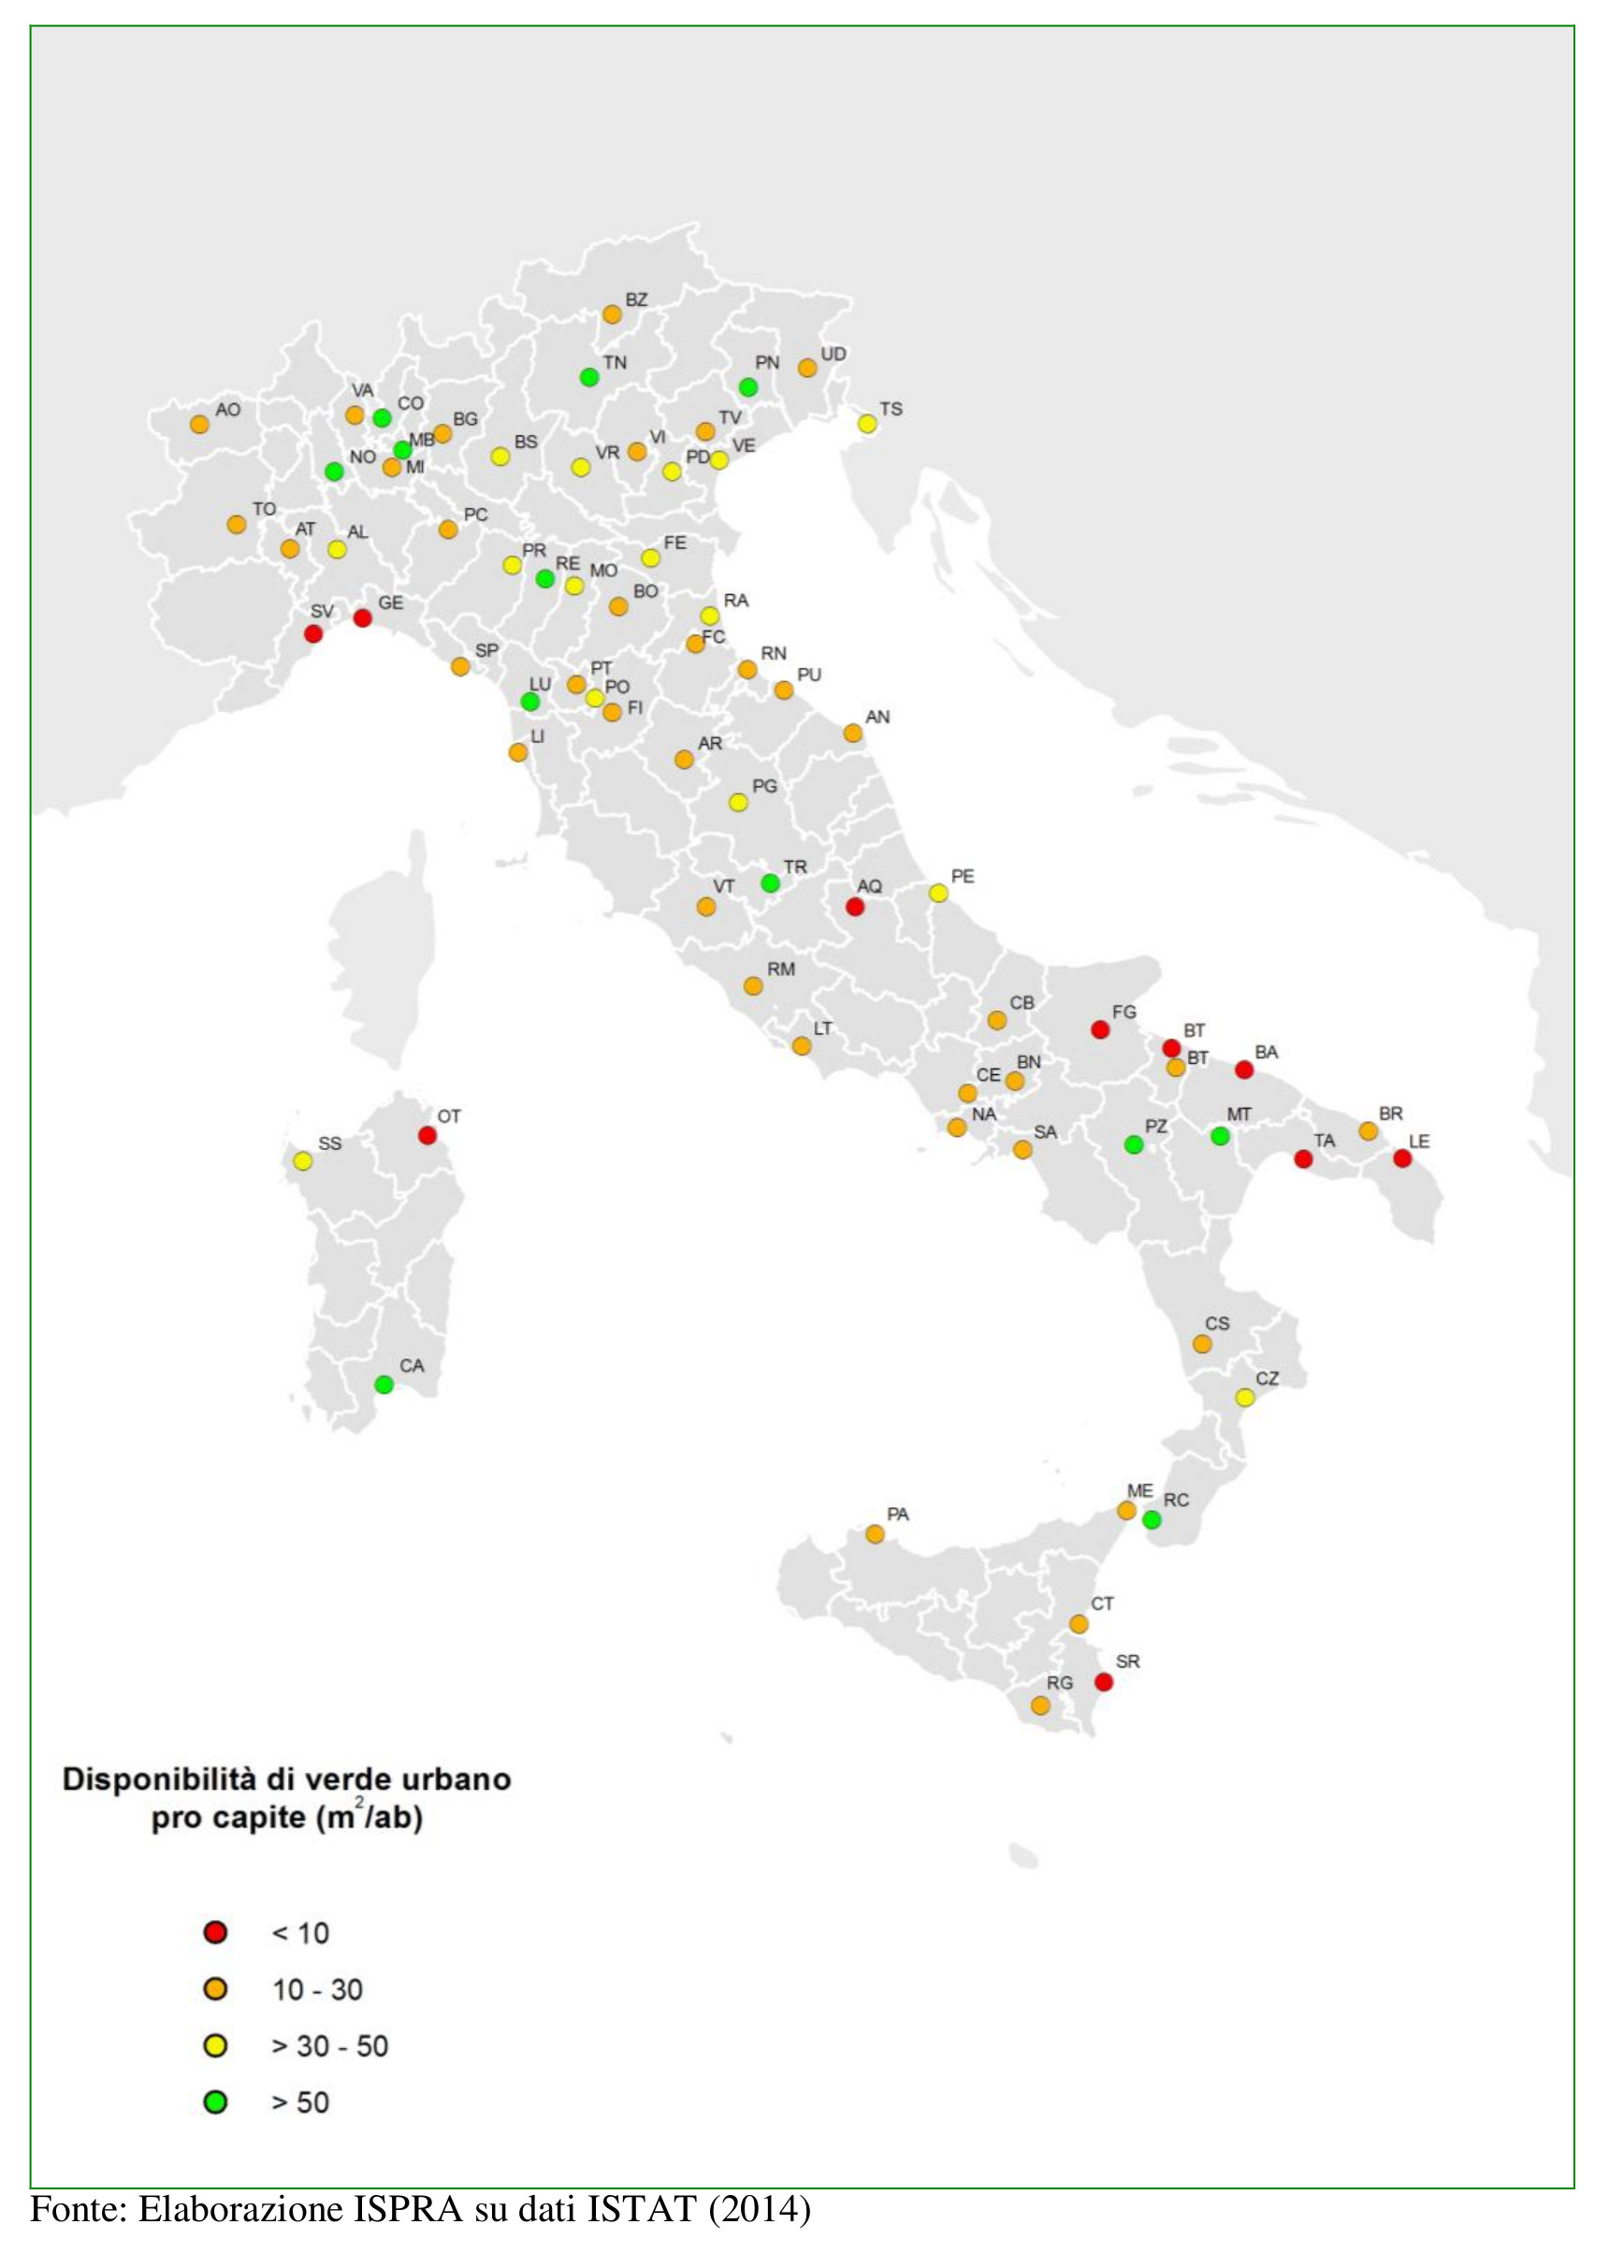 Disponibildad de verde per capita en las ciuidades Italianas, según el Documento ISPRA 2014